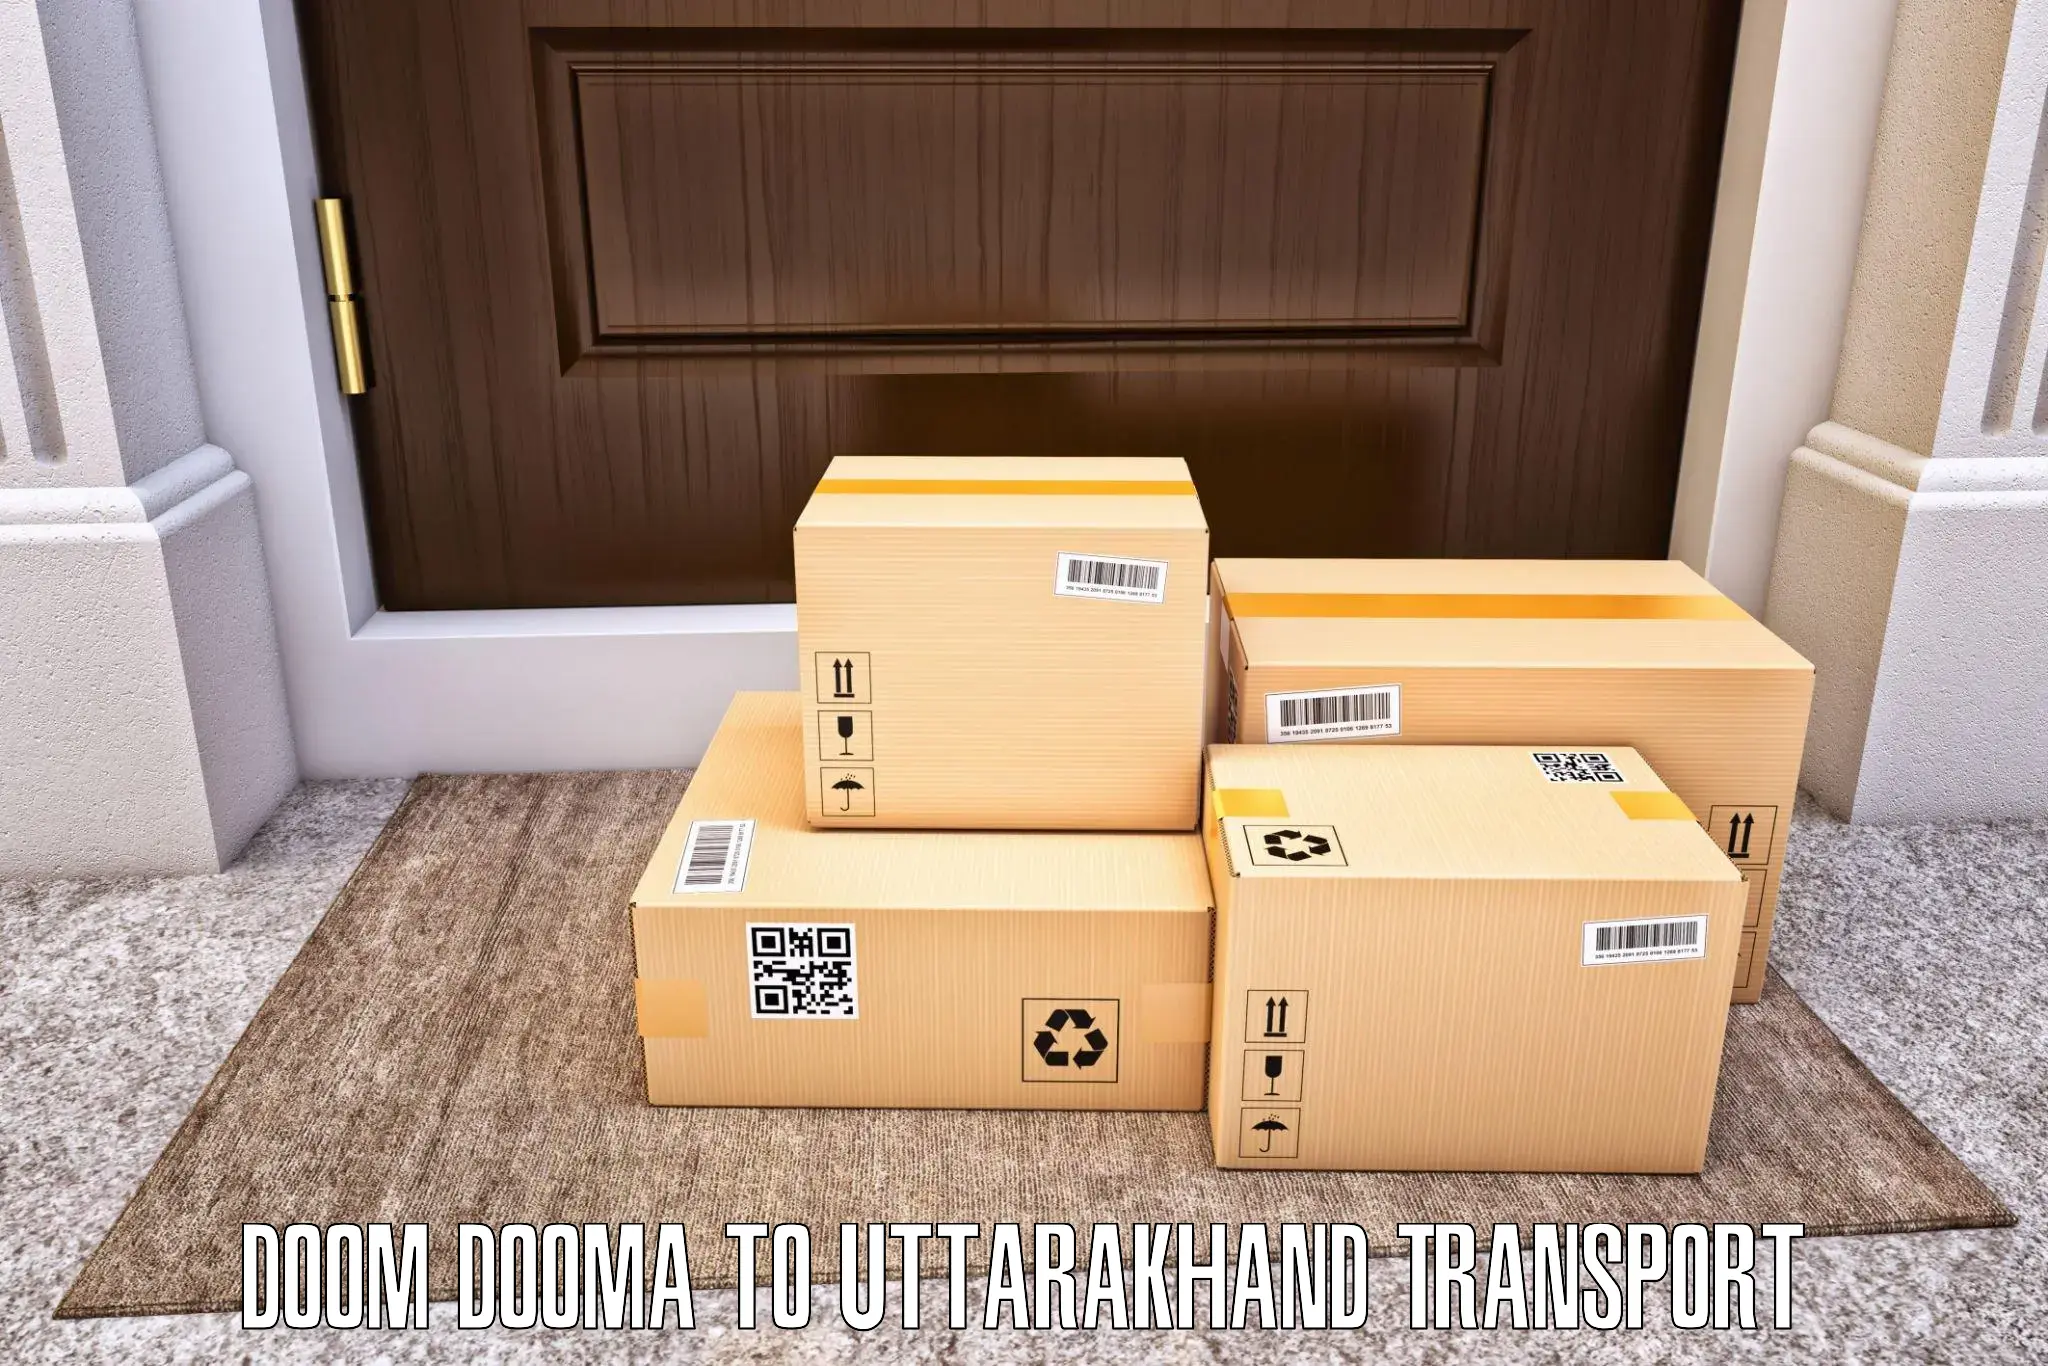 Shipping services Doom Dooma to Uttarkashi